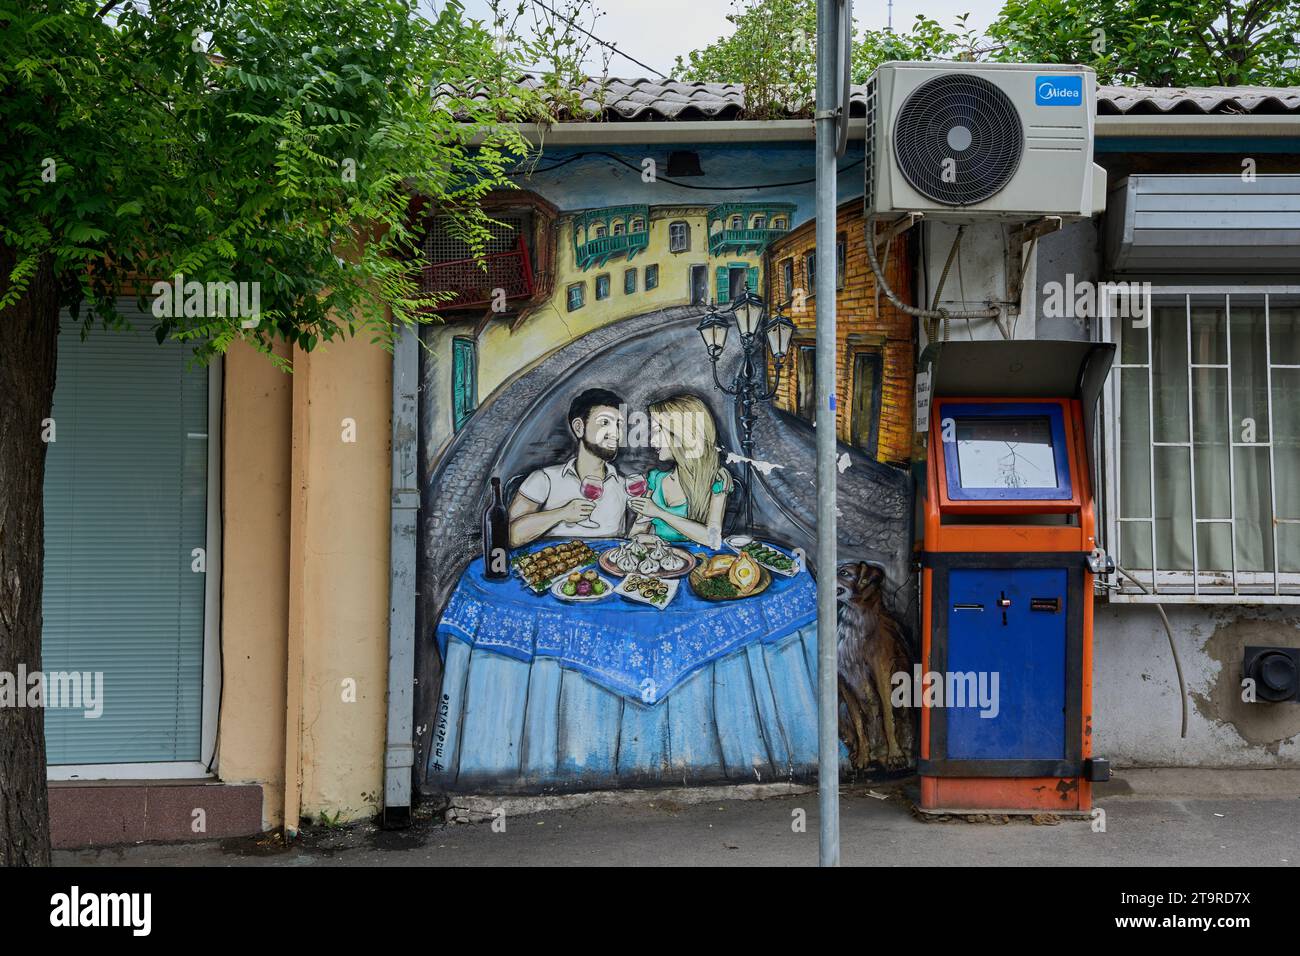 Grafitto, junges Paar beim Essen, typisch georgische Speisen, Bankomat, Stadtteil Awlabari, armenisches Viertel, Avlabari, Tiflis, Georgien Stock Photo